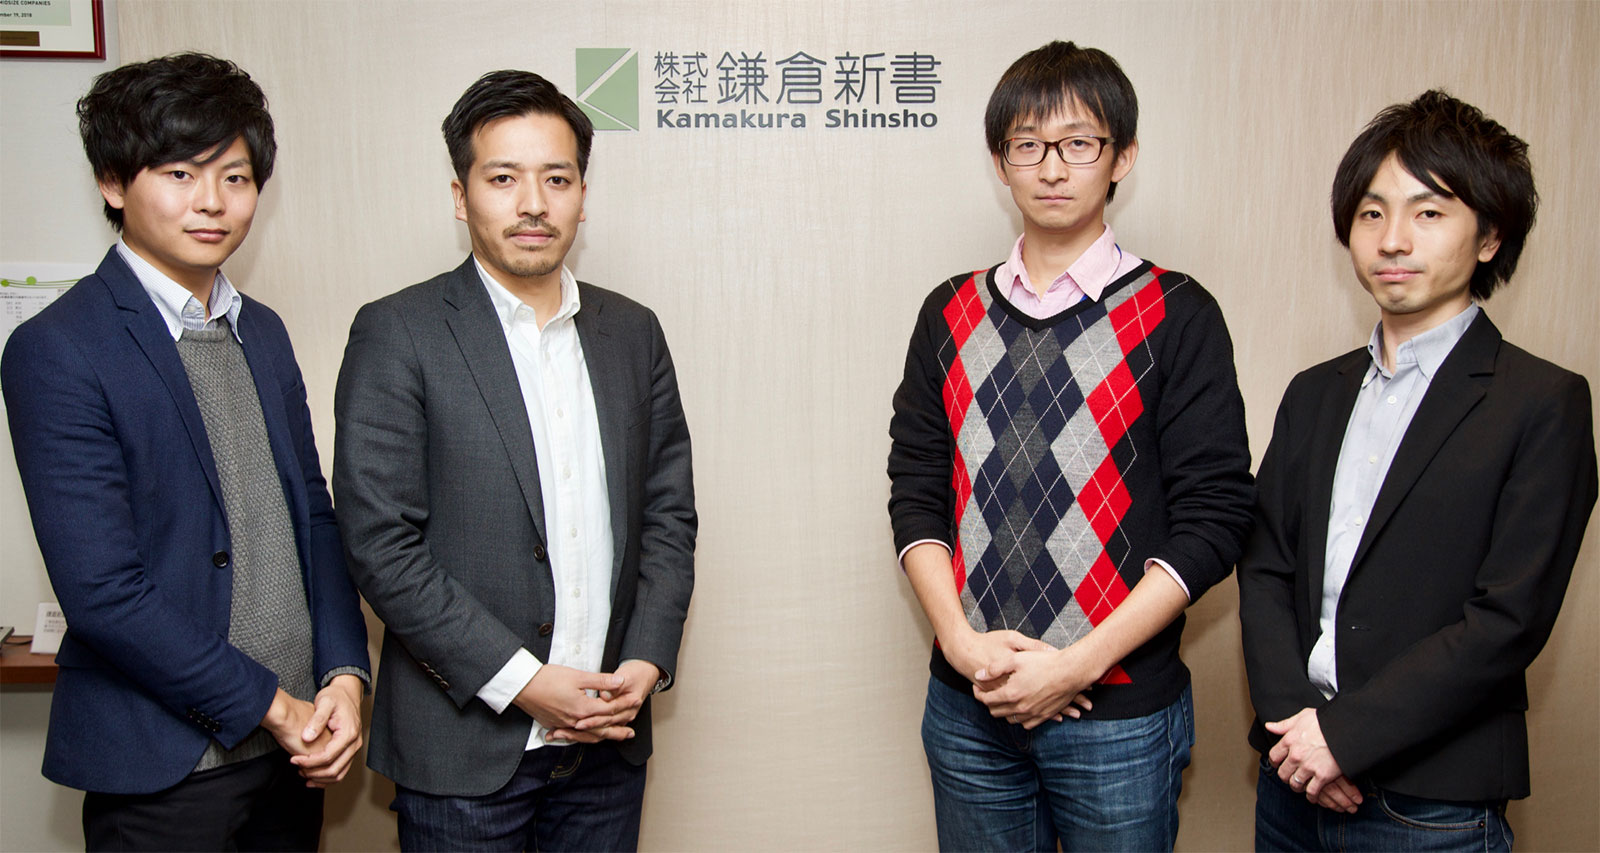 株式会社鎌倉新書の担当者さま2人とナイルのコンサルタント2人が写った写真